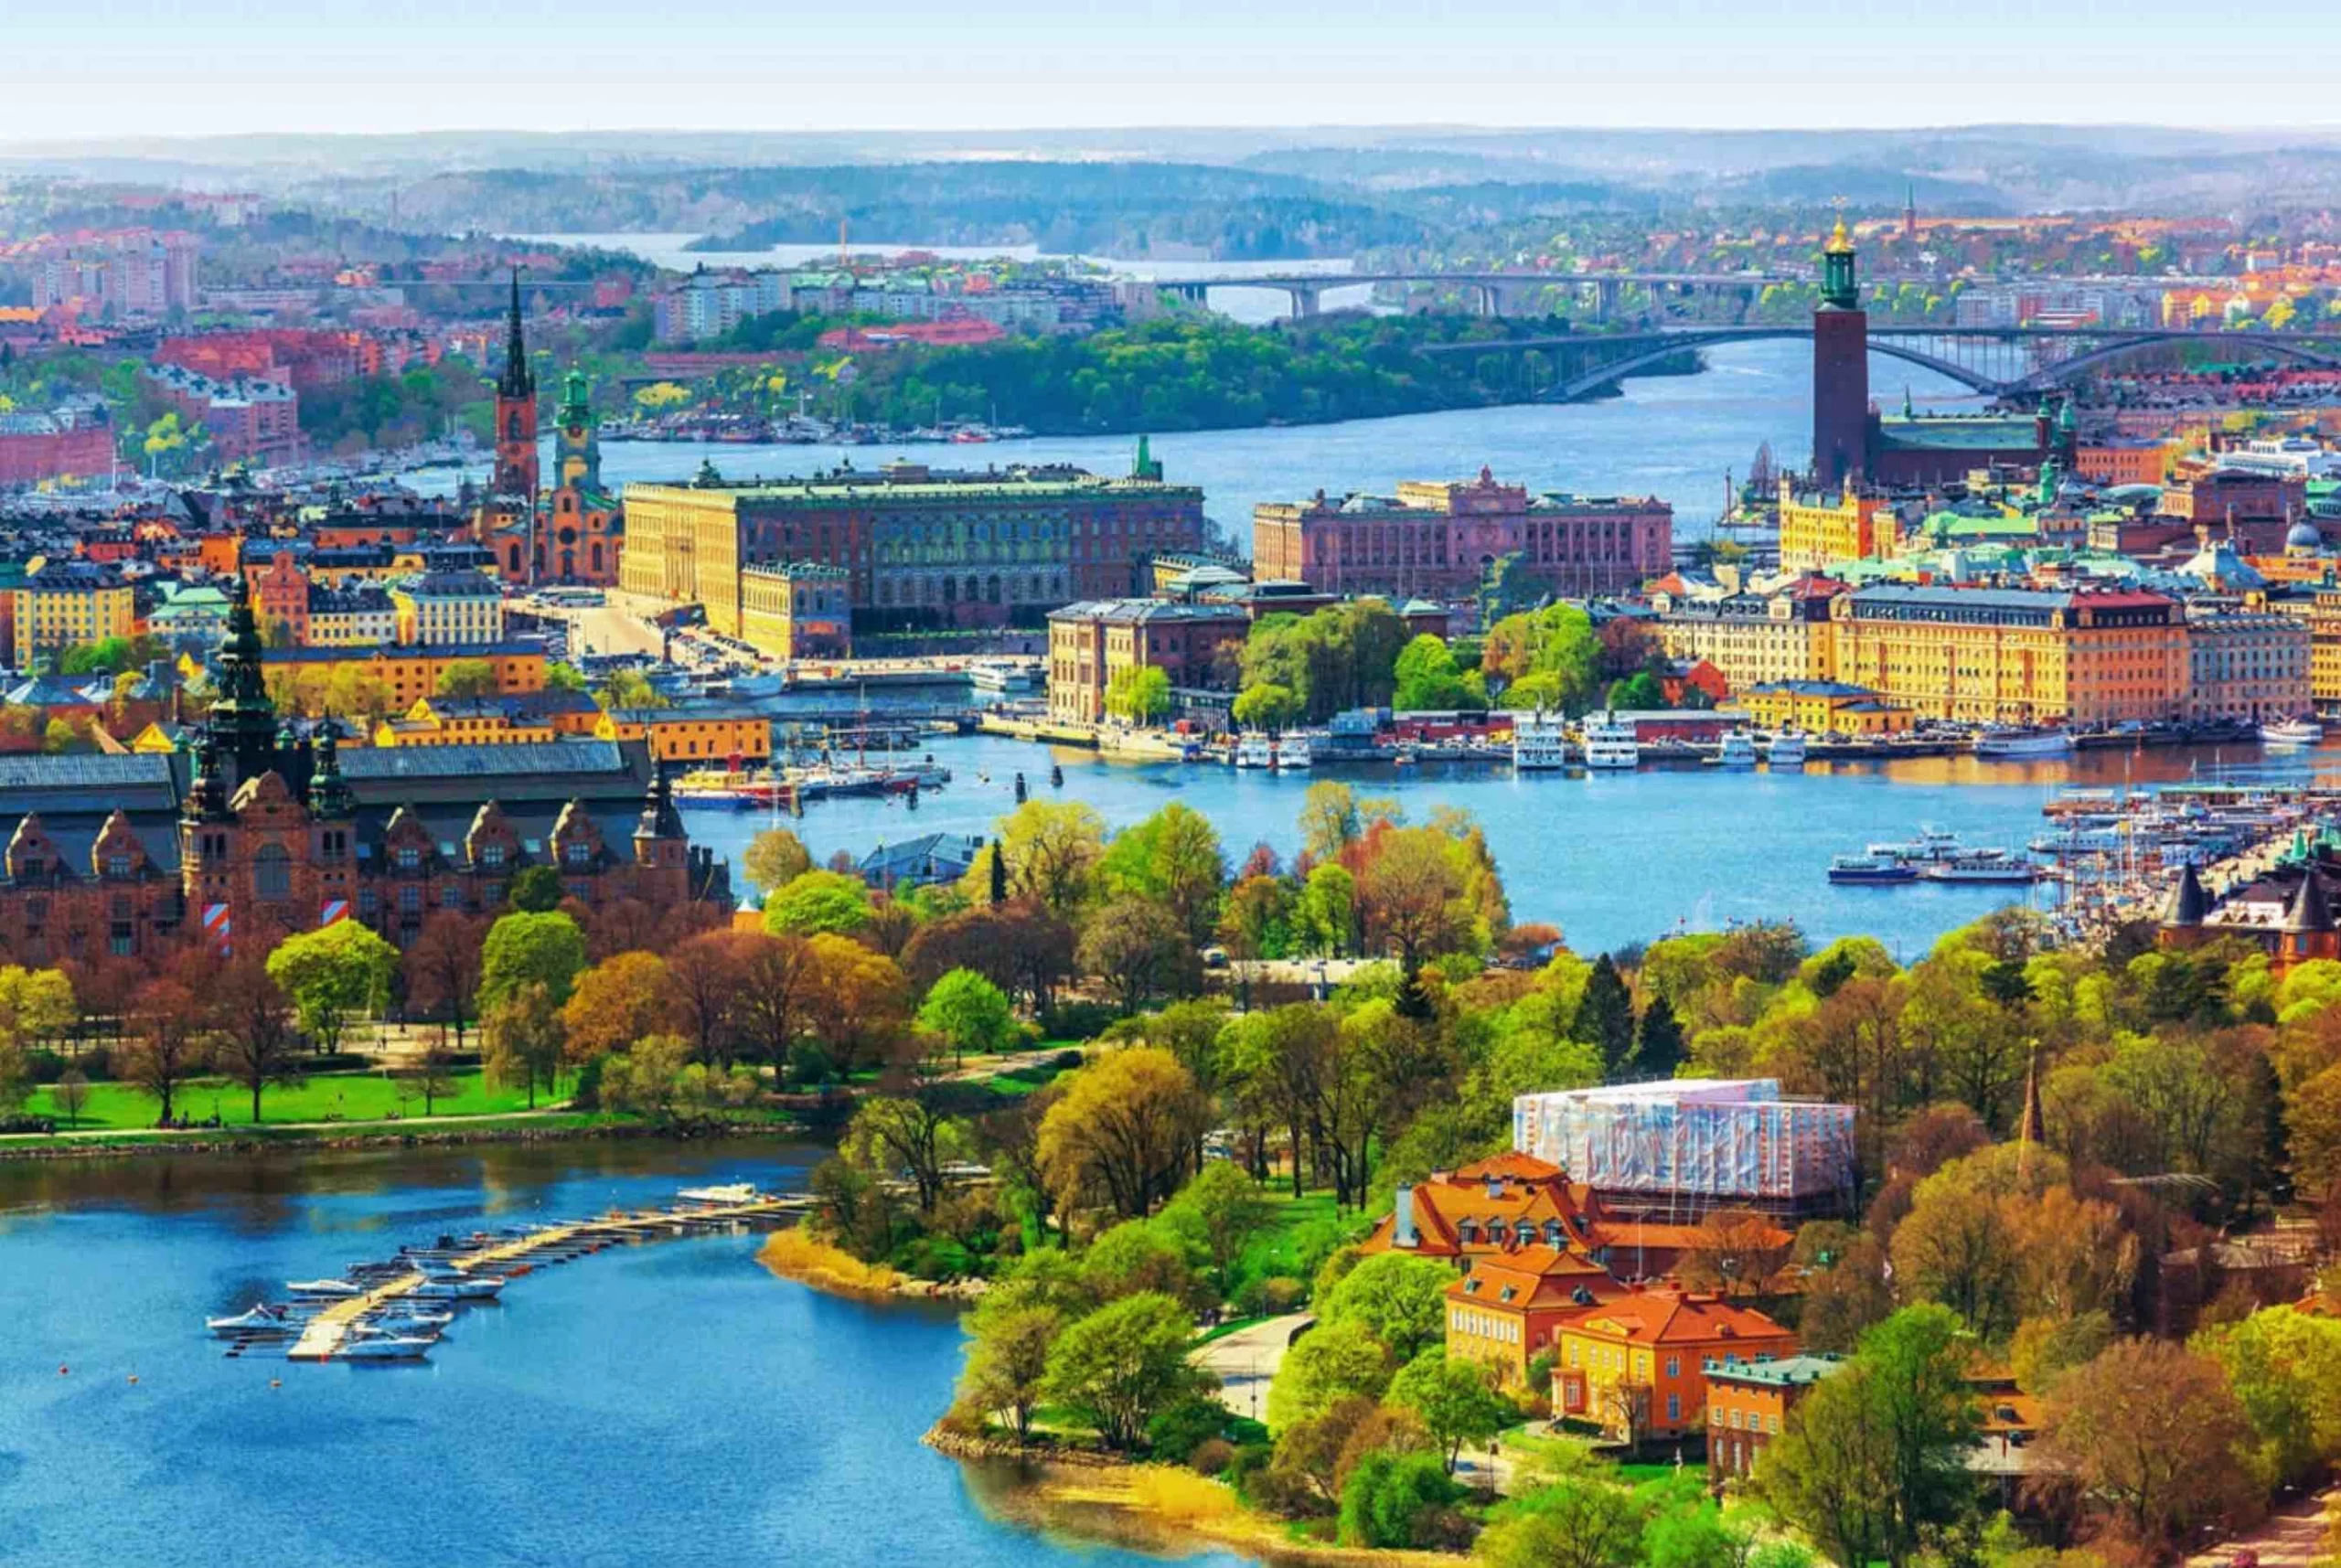 Vé máy bay đi Thụy Điển giá rẻ tốt nhất - Lịch bay 2022